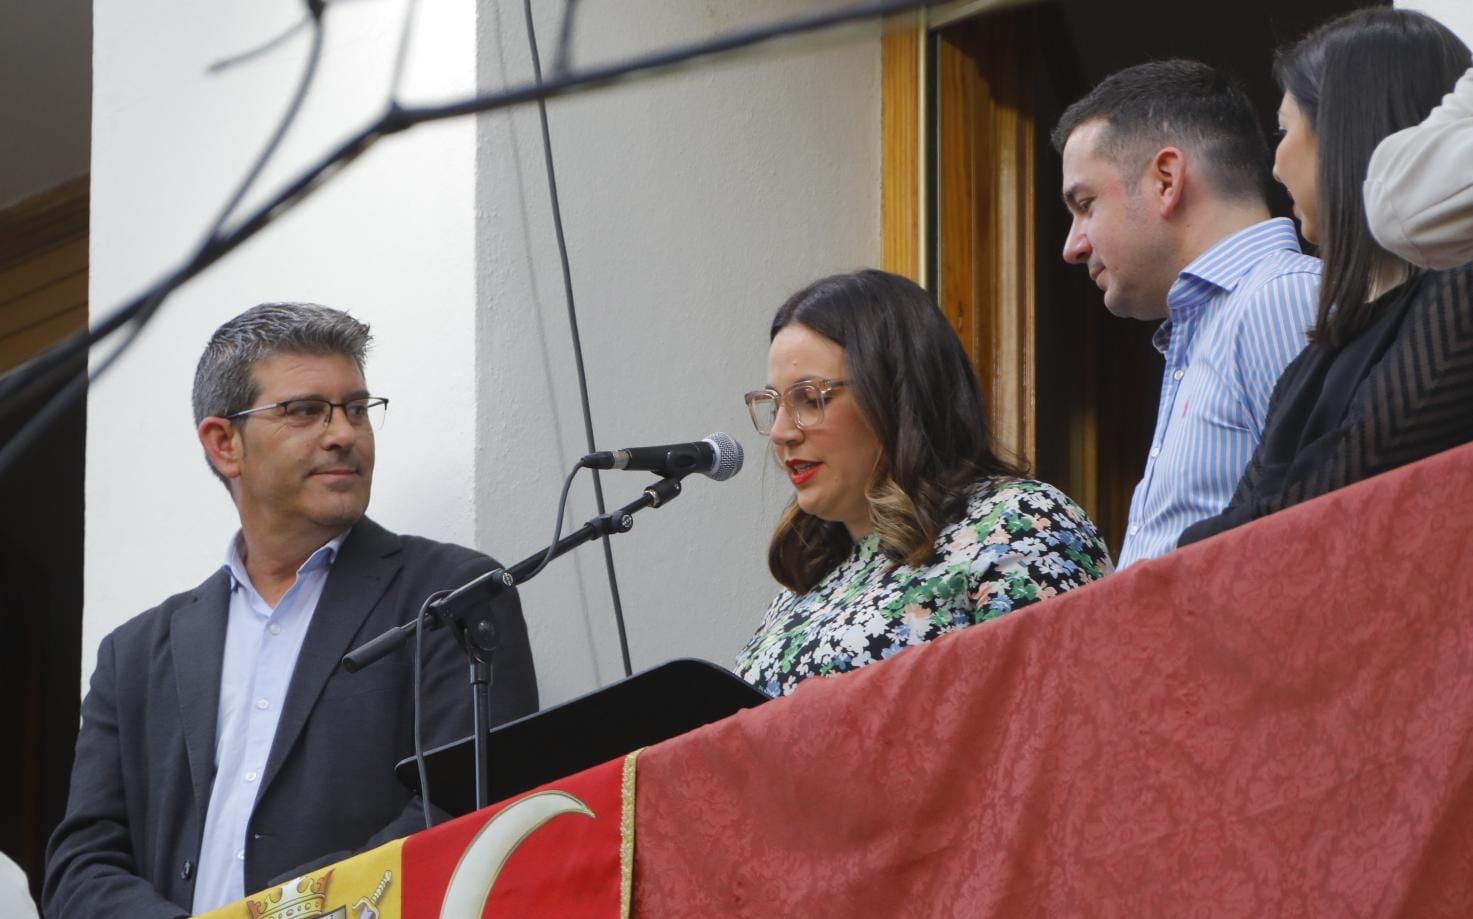 Estefania Conejero realitzant el pregó al balcó de l'ajuntament que obria oficialment "Ontinyent Medieval"